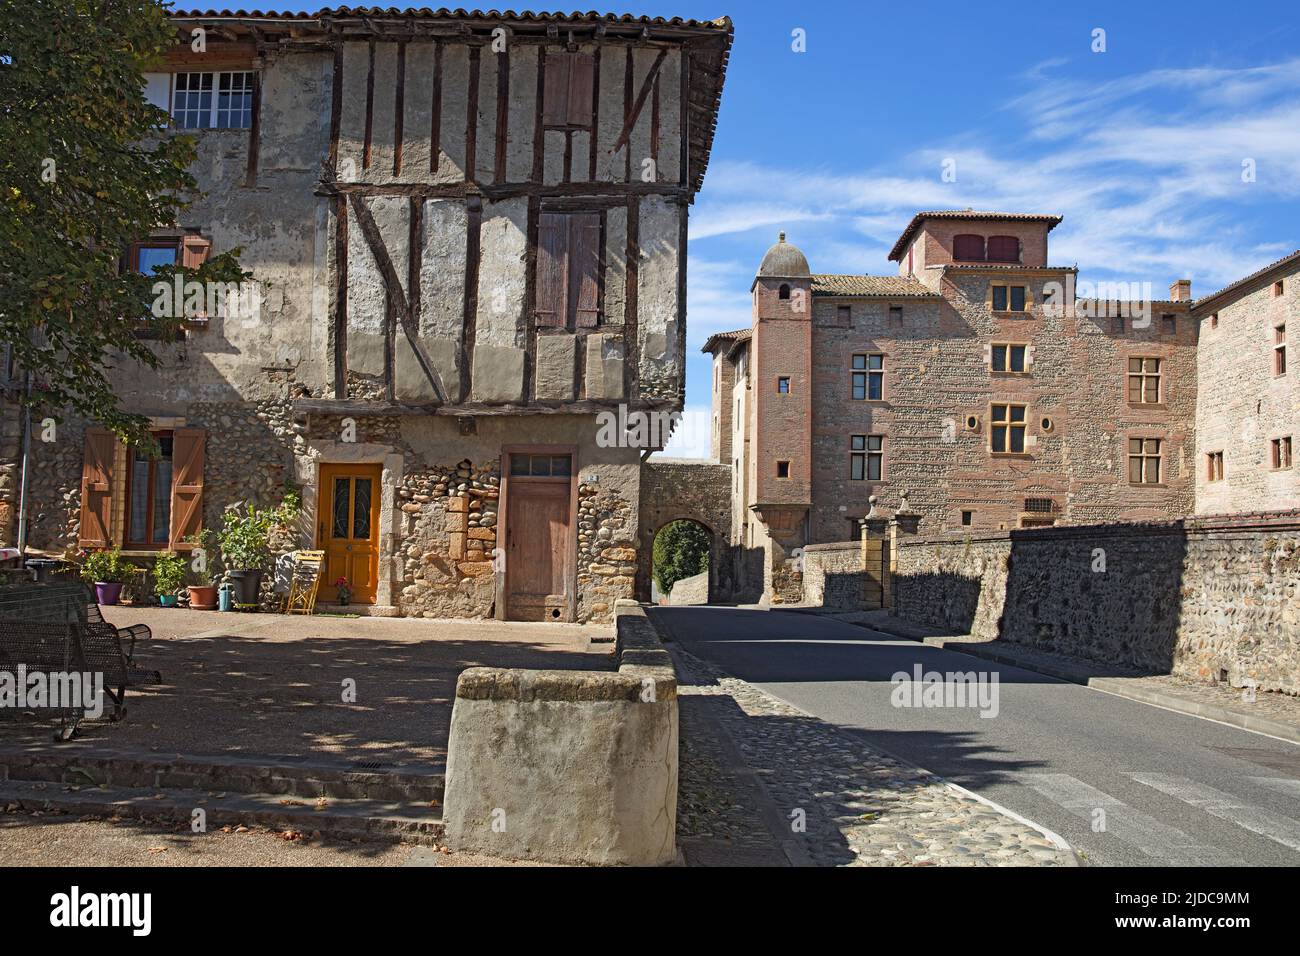 Francia, Palaminy Alto Garona, el castillo, casa medieval Foto de stock